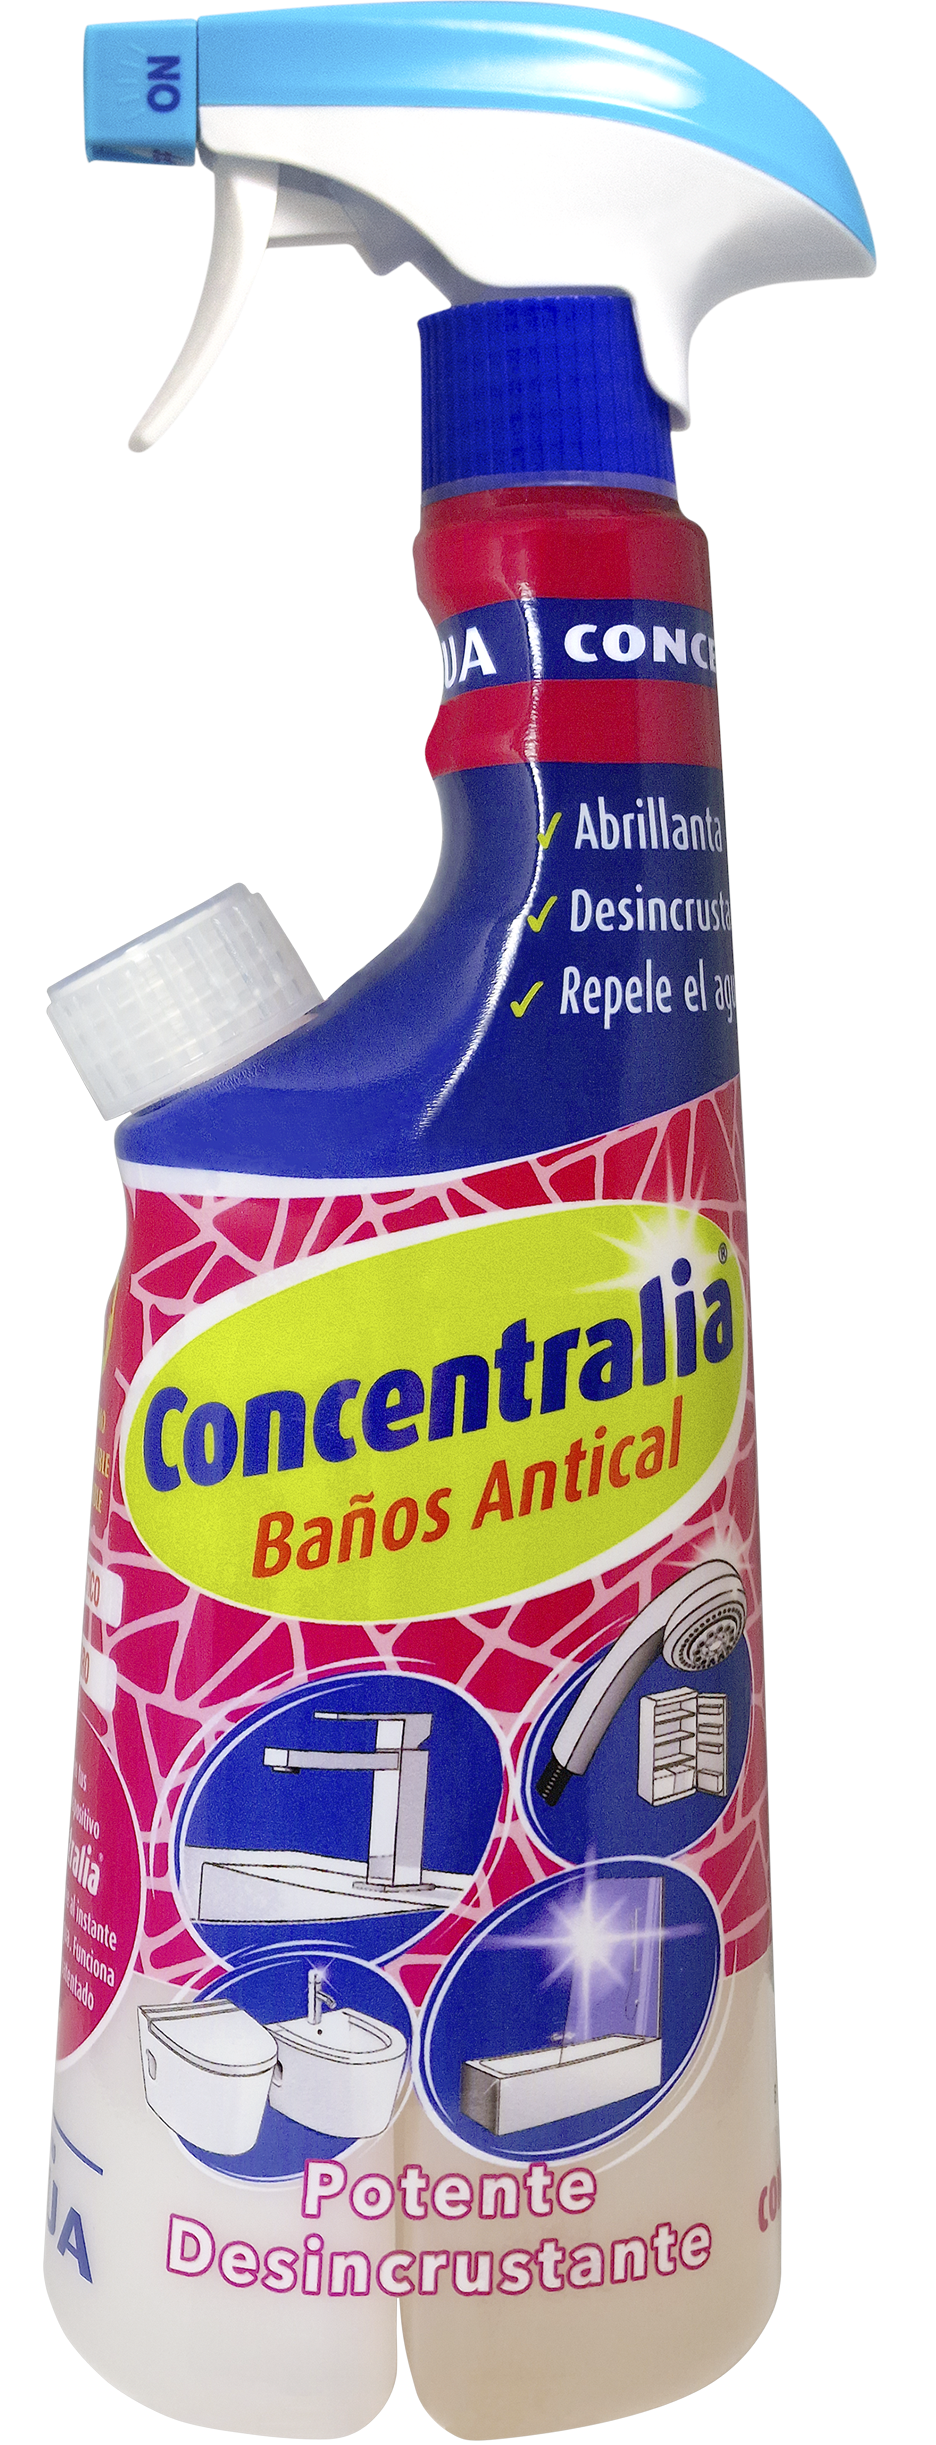 Detergente Antical 750 Ml. Desincrustante Cal, Antical Ducha, Antical  Paredes, Antical Baños, Eliminador De Cal en